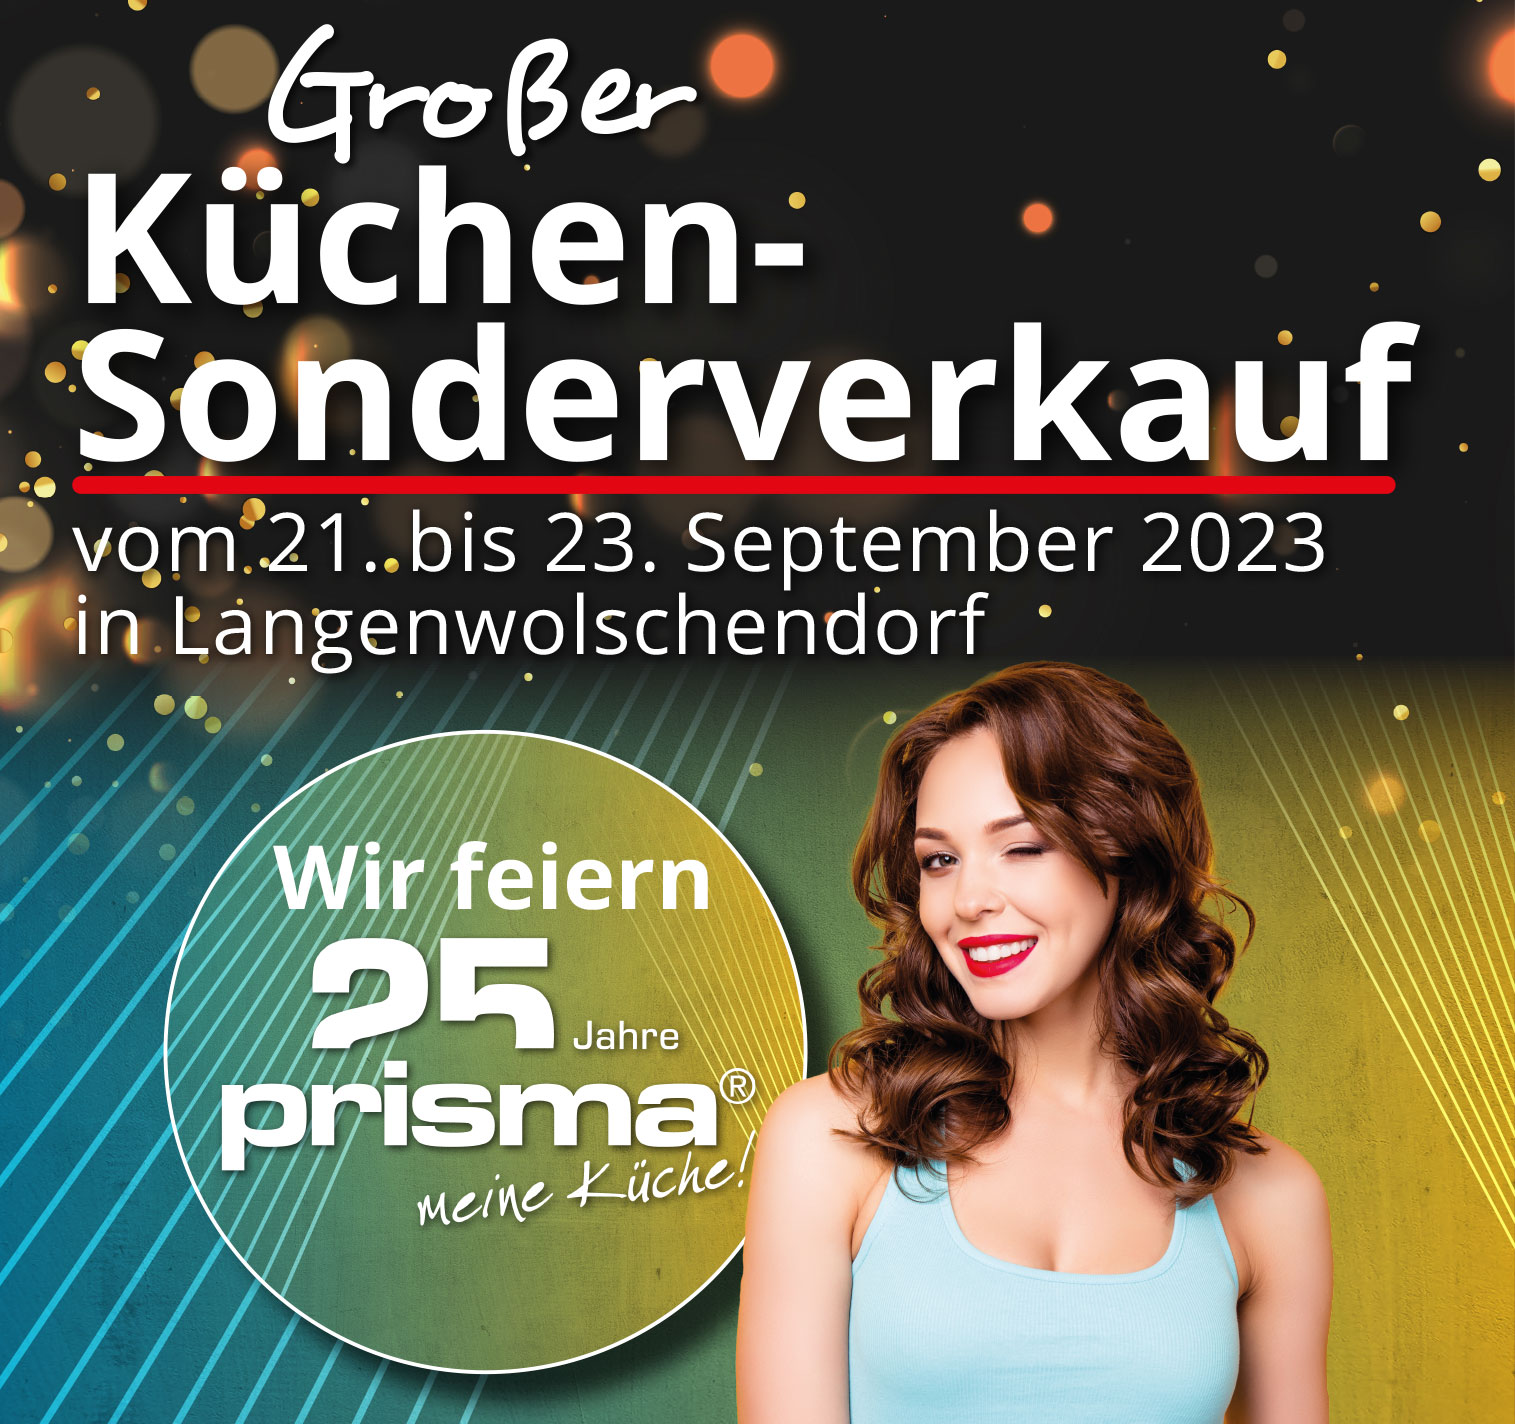 Jetzt kräftig sparen beim großen Küchen-Sonderverkauf beim Mega Küchencenter in Langenwolschendorf. Nur vom 21. - 23. September!